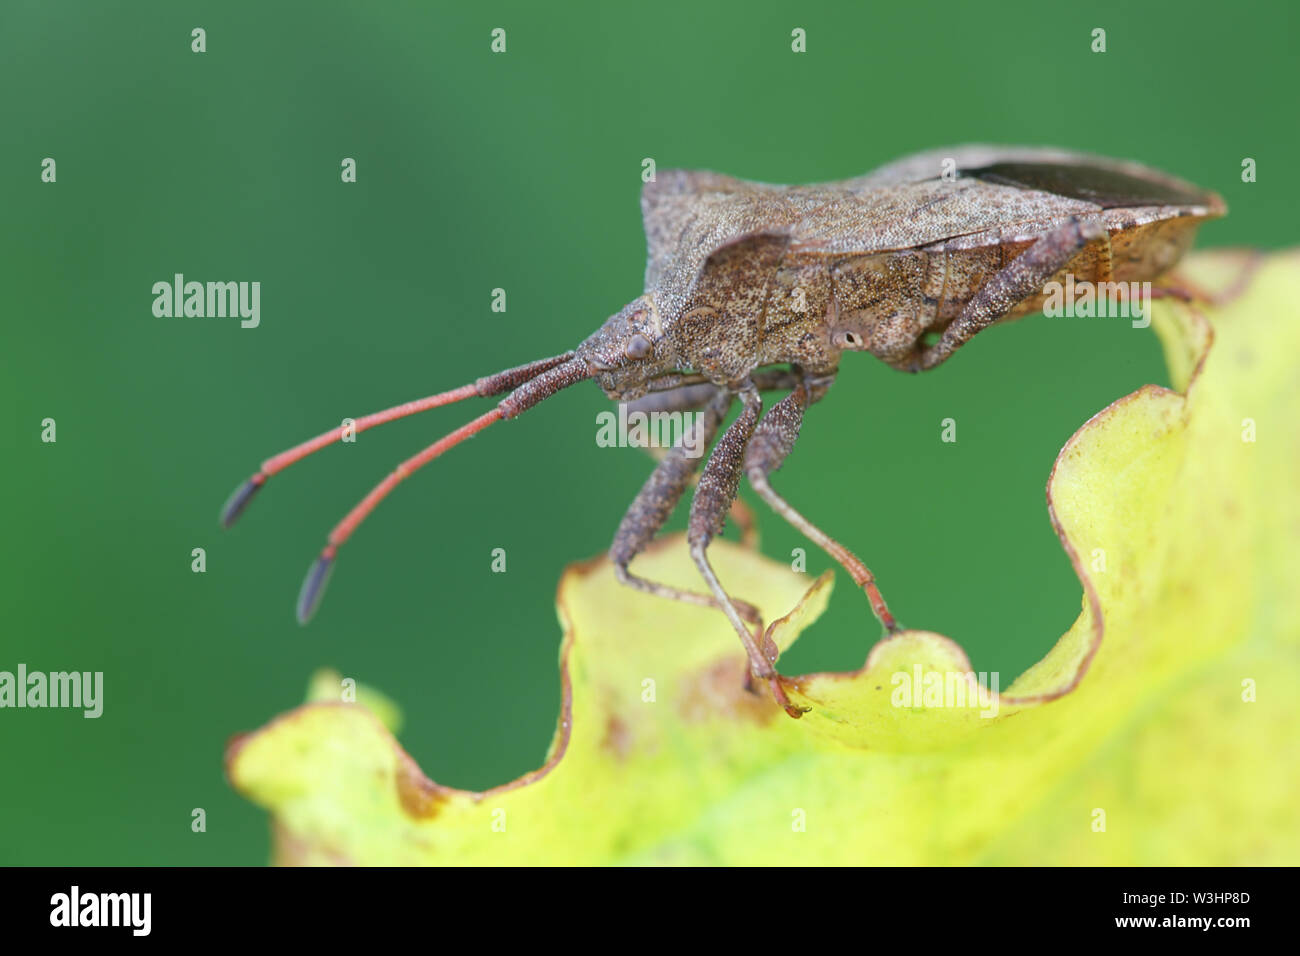 Coreus marginatus, connu comme le Dock Bug, une espèce de punaises dans la famille Coréidés Banque D'Images